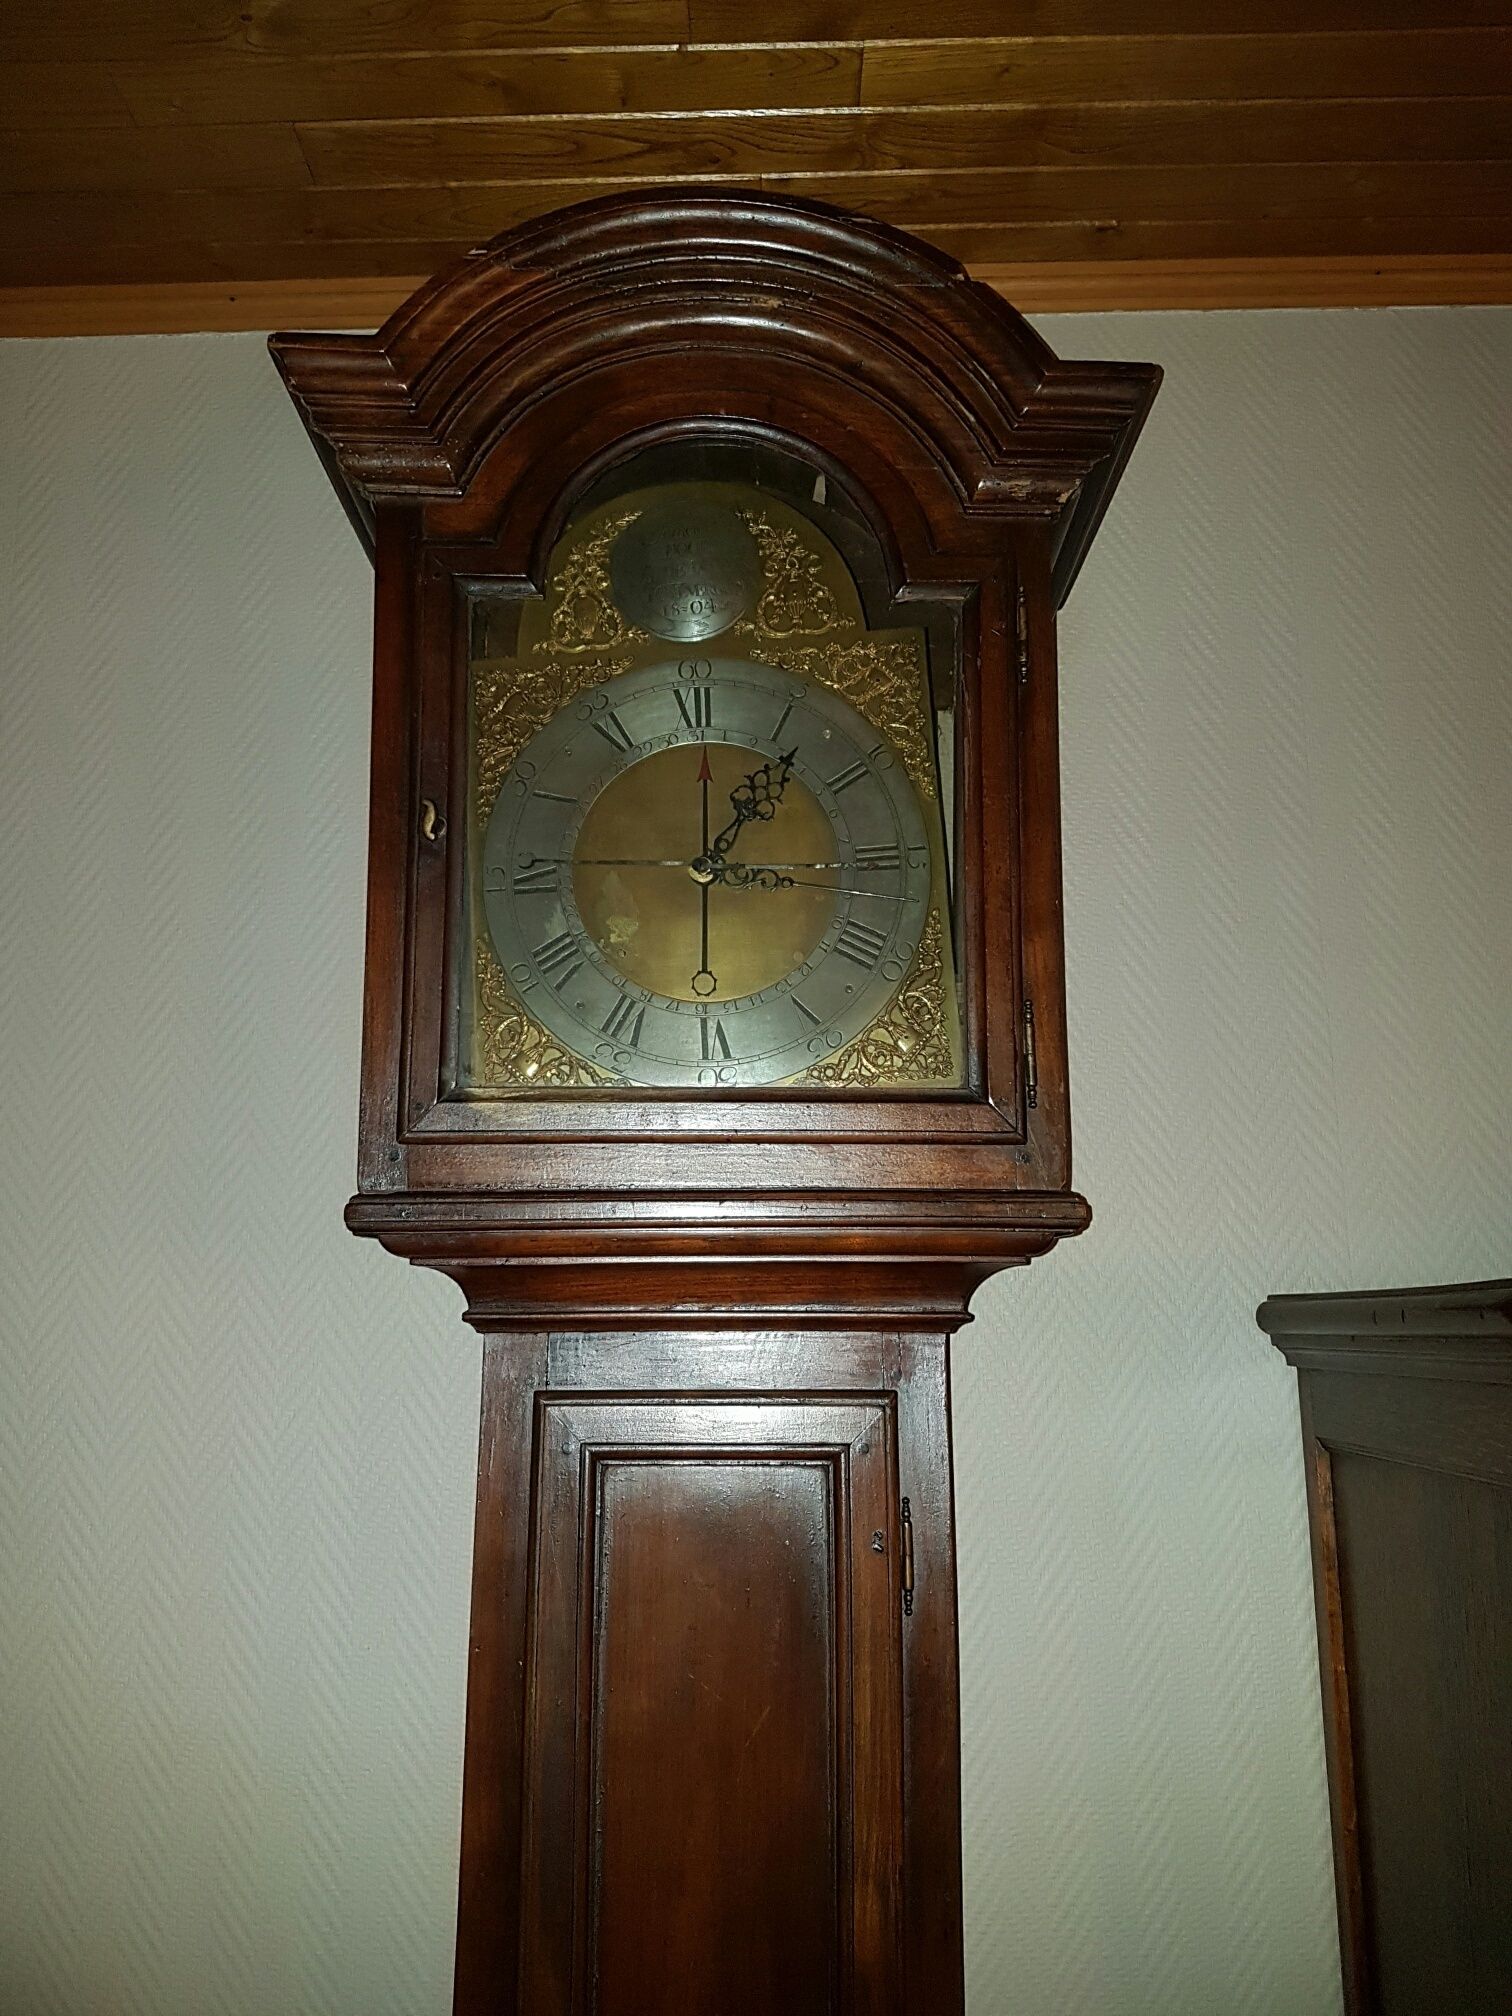 Prijsschatting oude staande klok - Horlogeforum - het forum voor liefhebbers van horloges